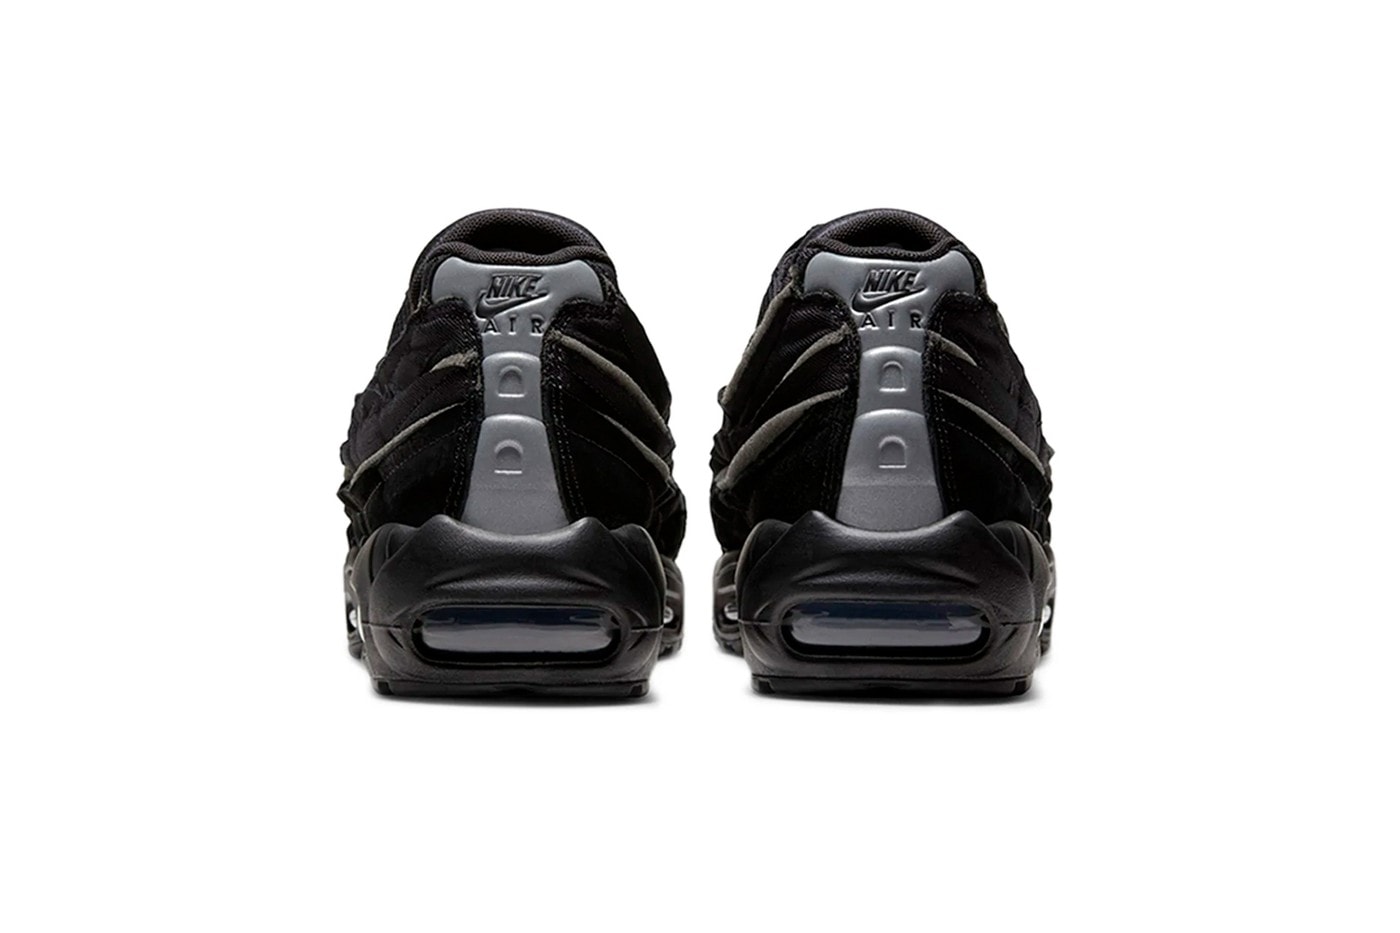 COMME des GARÇONS HOMME PLUS x Nike Air Max 95 聯乘鞋款上架